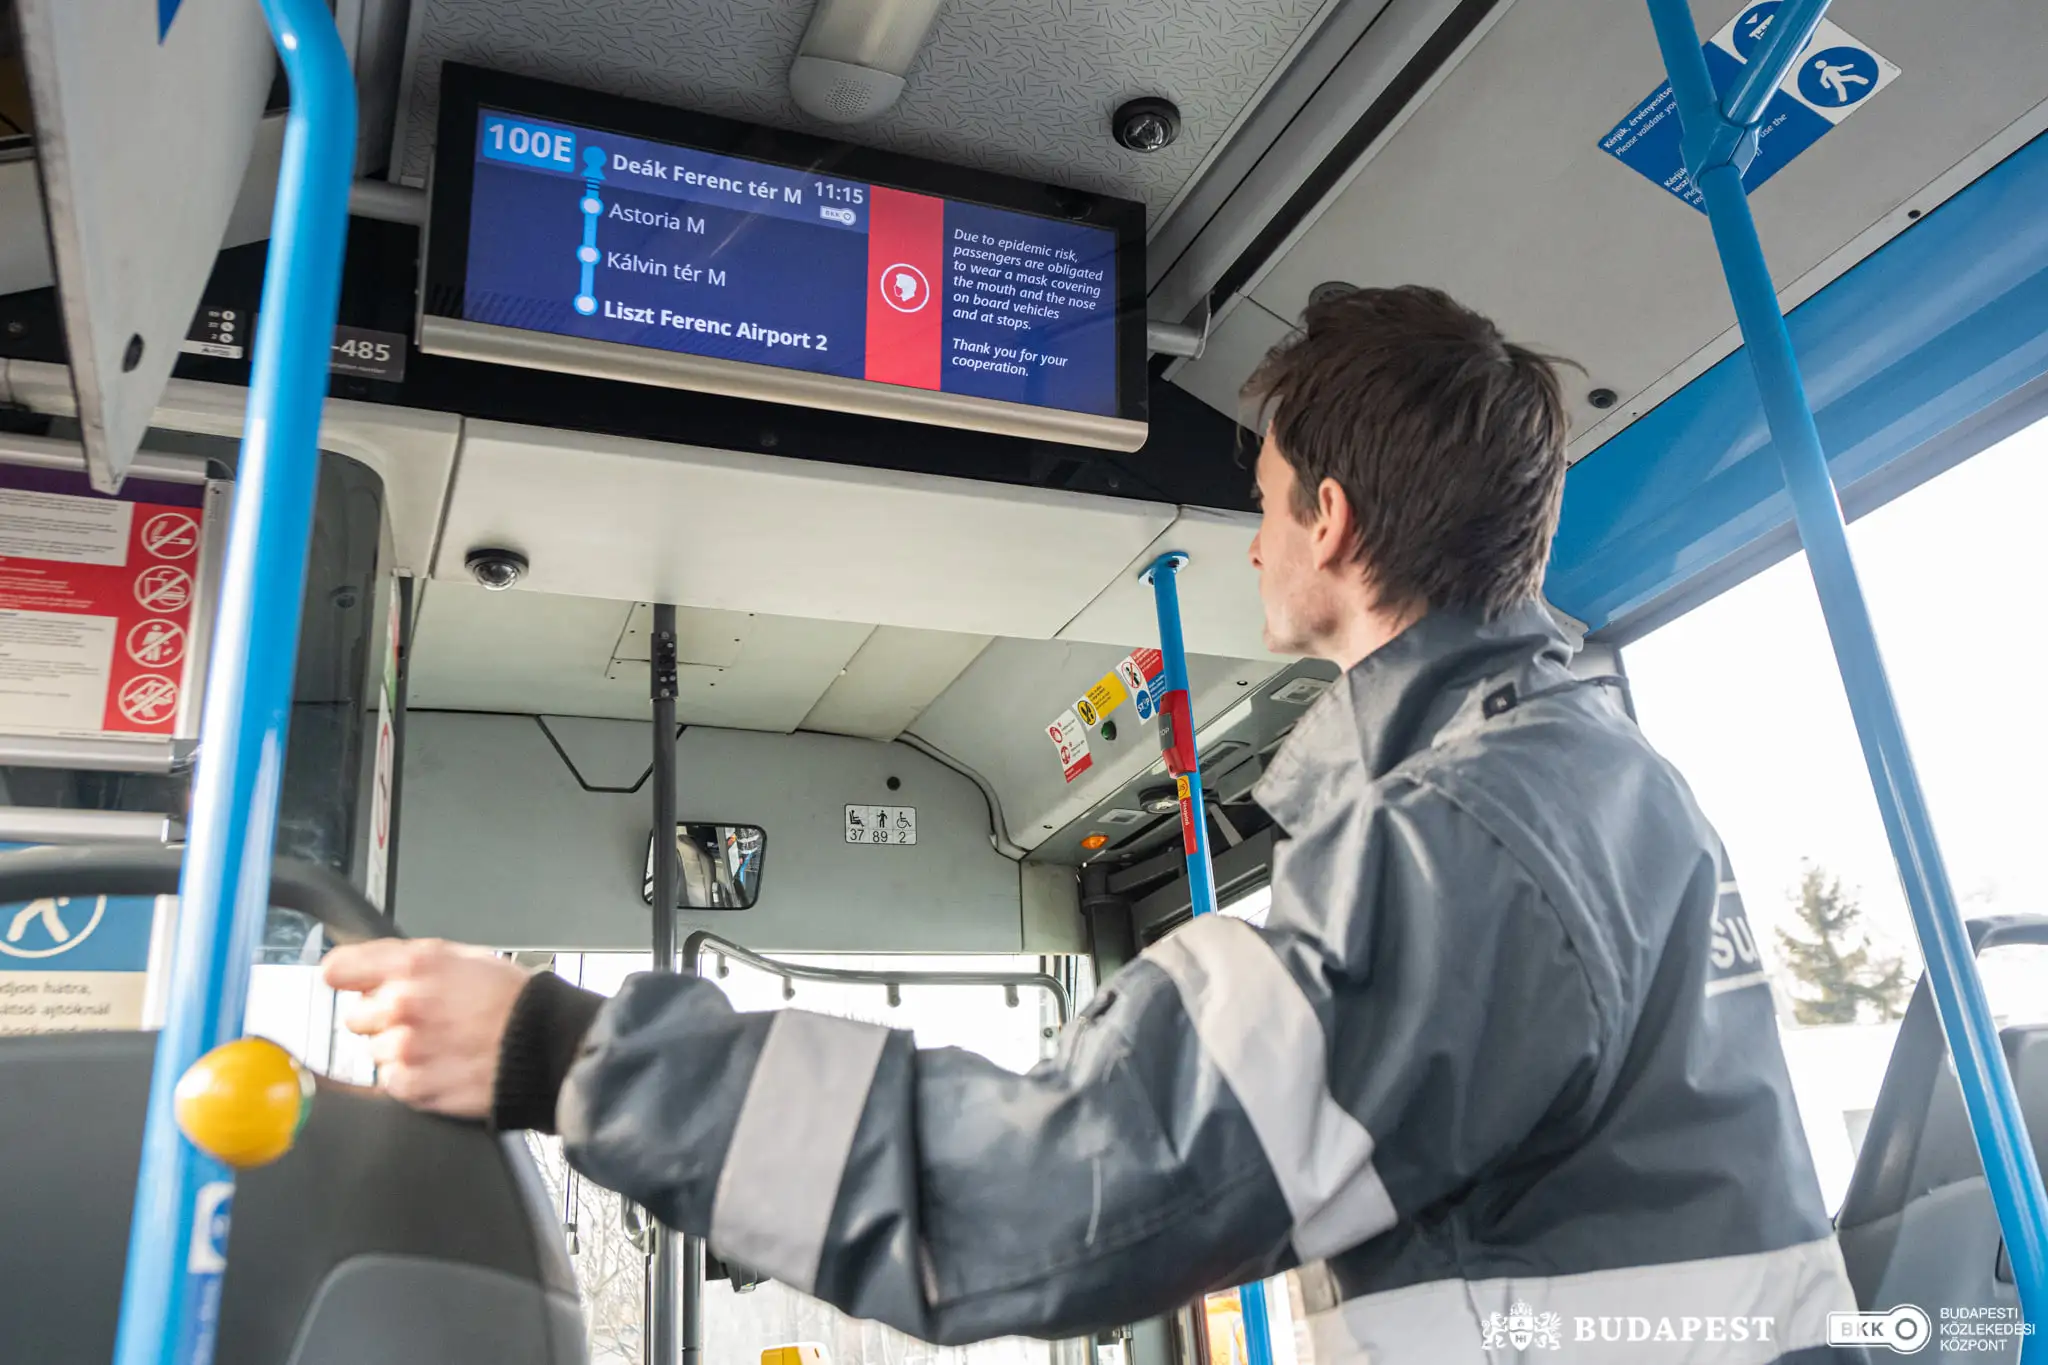 Lucrătorii oaspeți vor conduce autobuzele între centrul orașului Budapesta și Aeroportul Budapesta